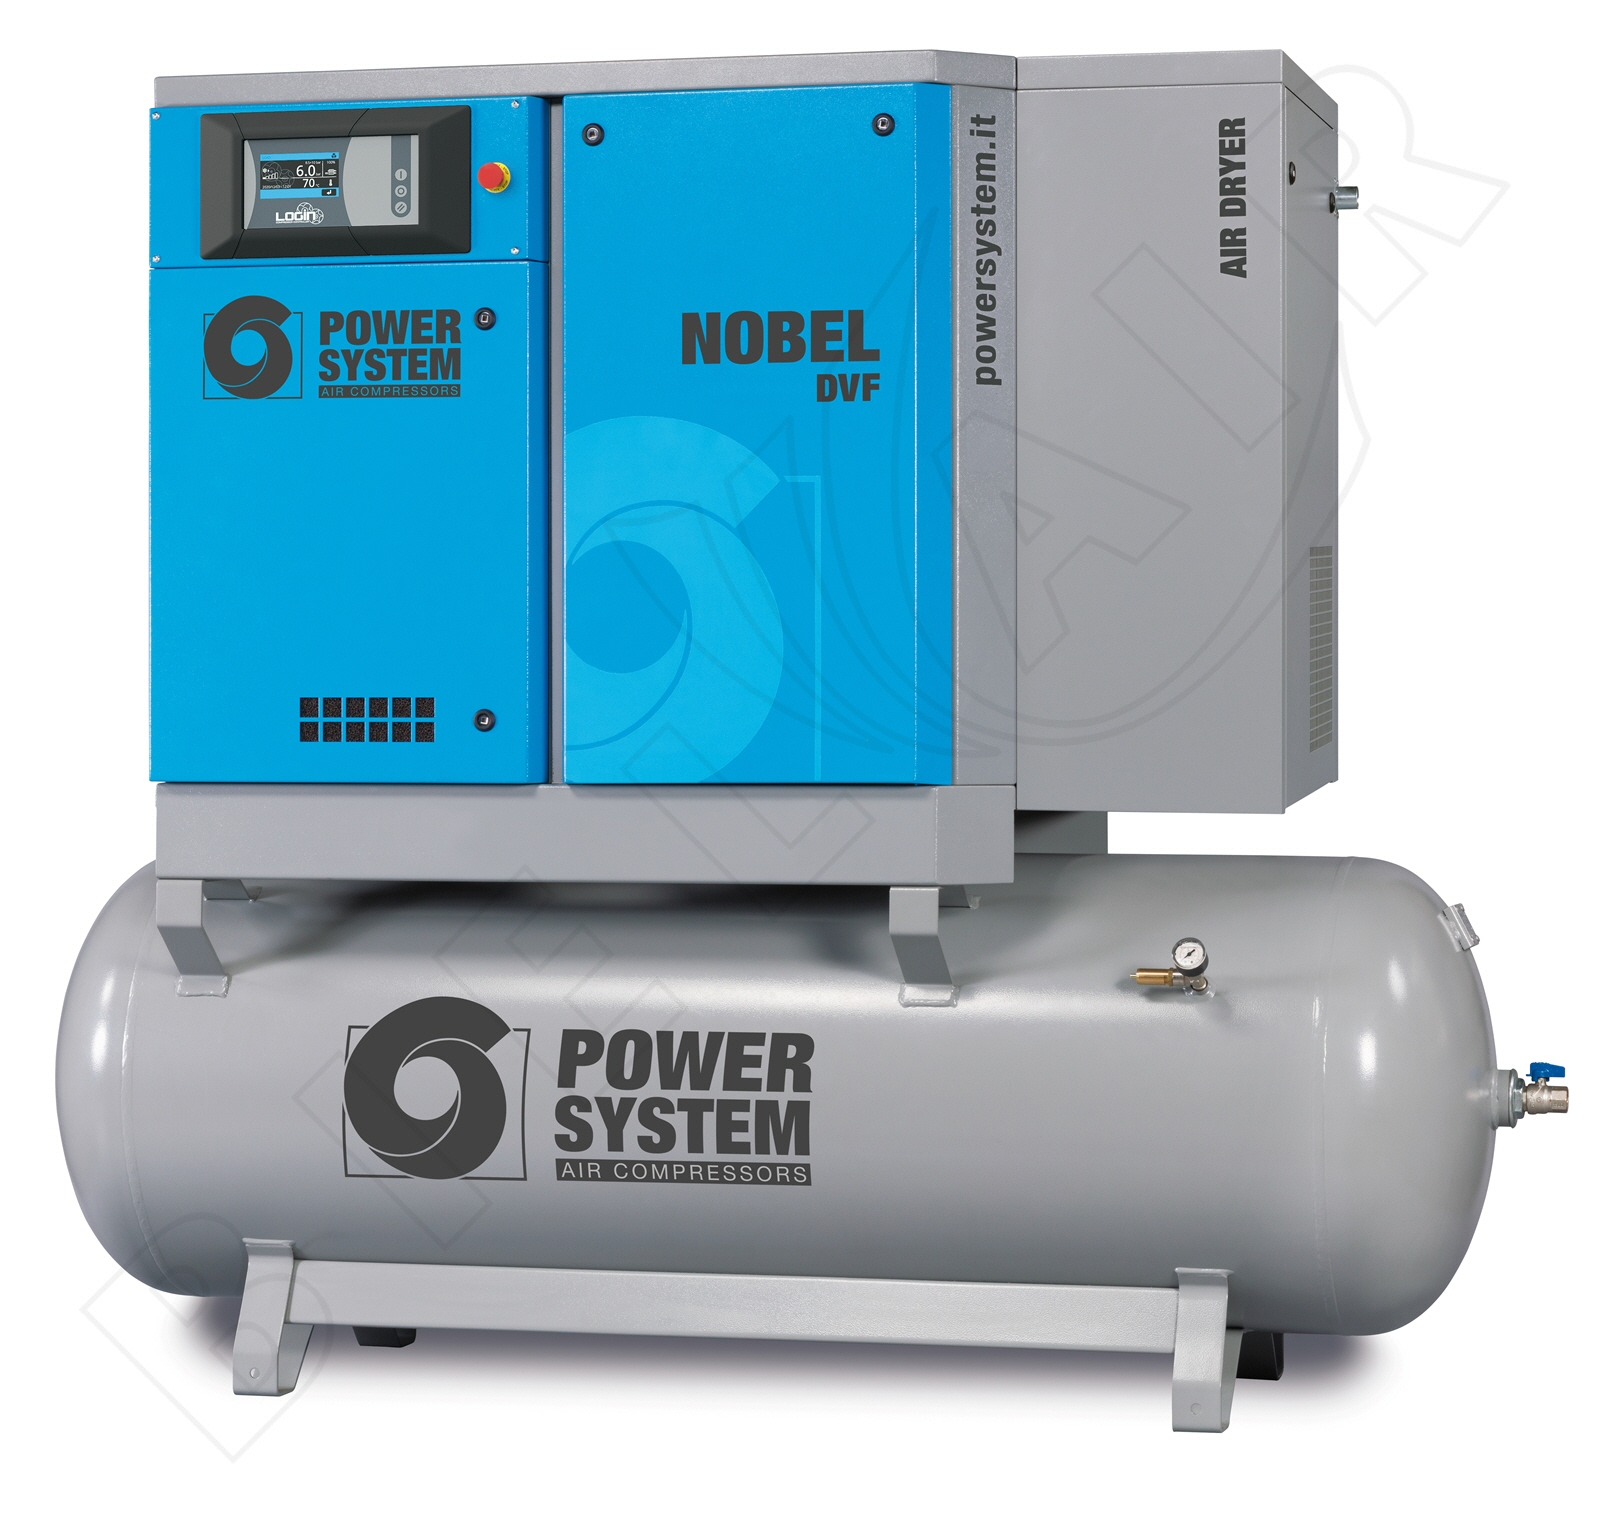 POWERSYSTEM Schraubenkompressor NOBEL 11-08 500 DVF (IE3) LOGIN Frequenzgesteuert mit Behälter und Kältetrockner